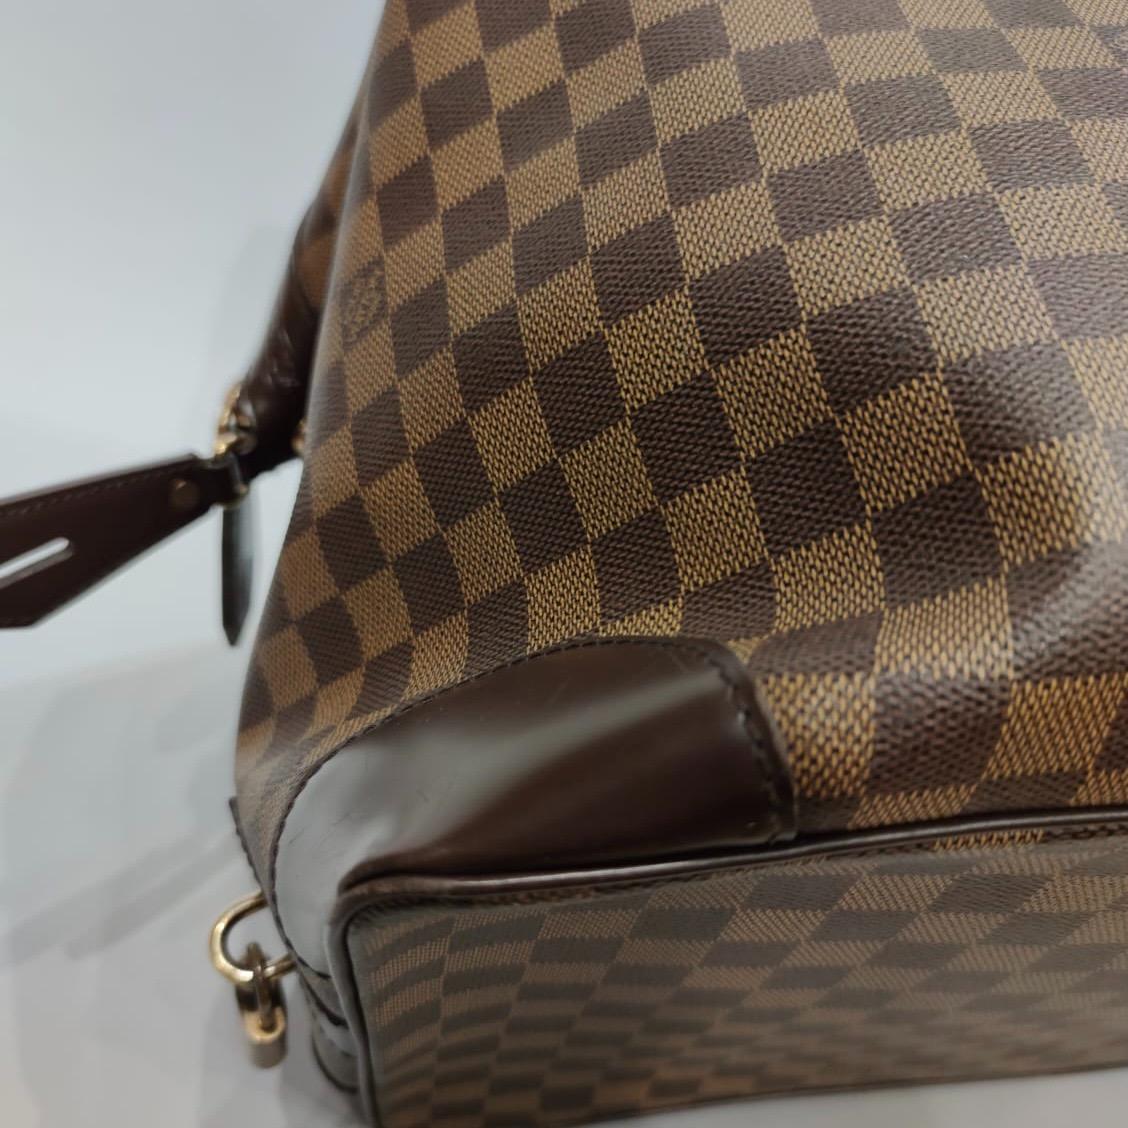 Louis Vuitton travel bag - Des Voyages - Recent Added Items